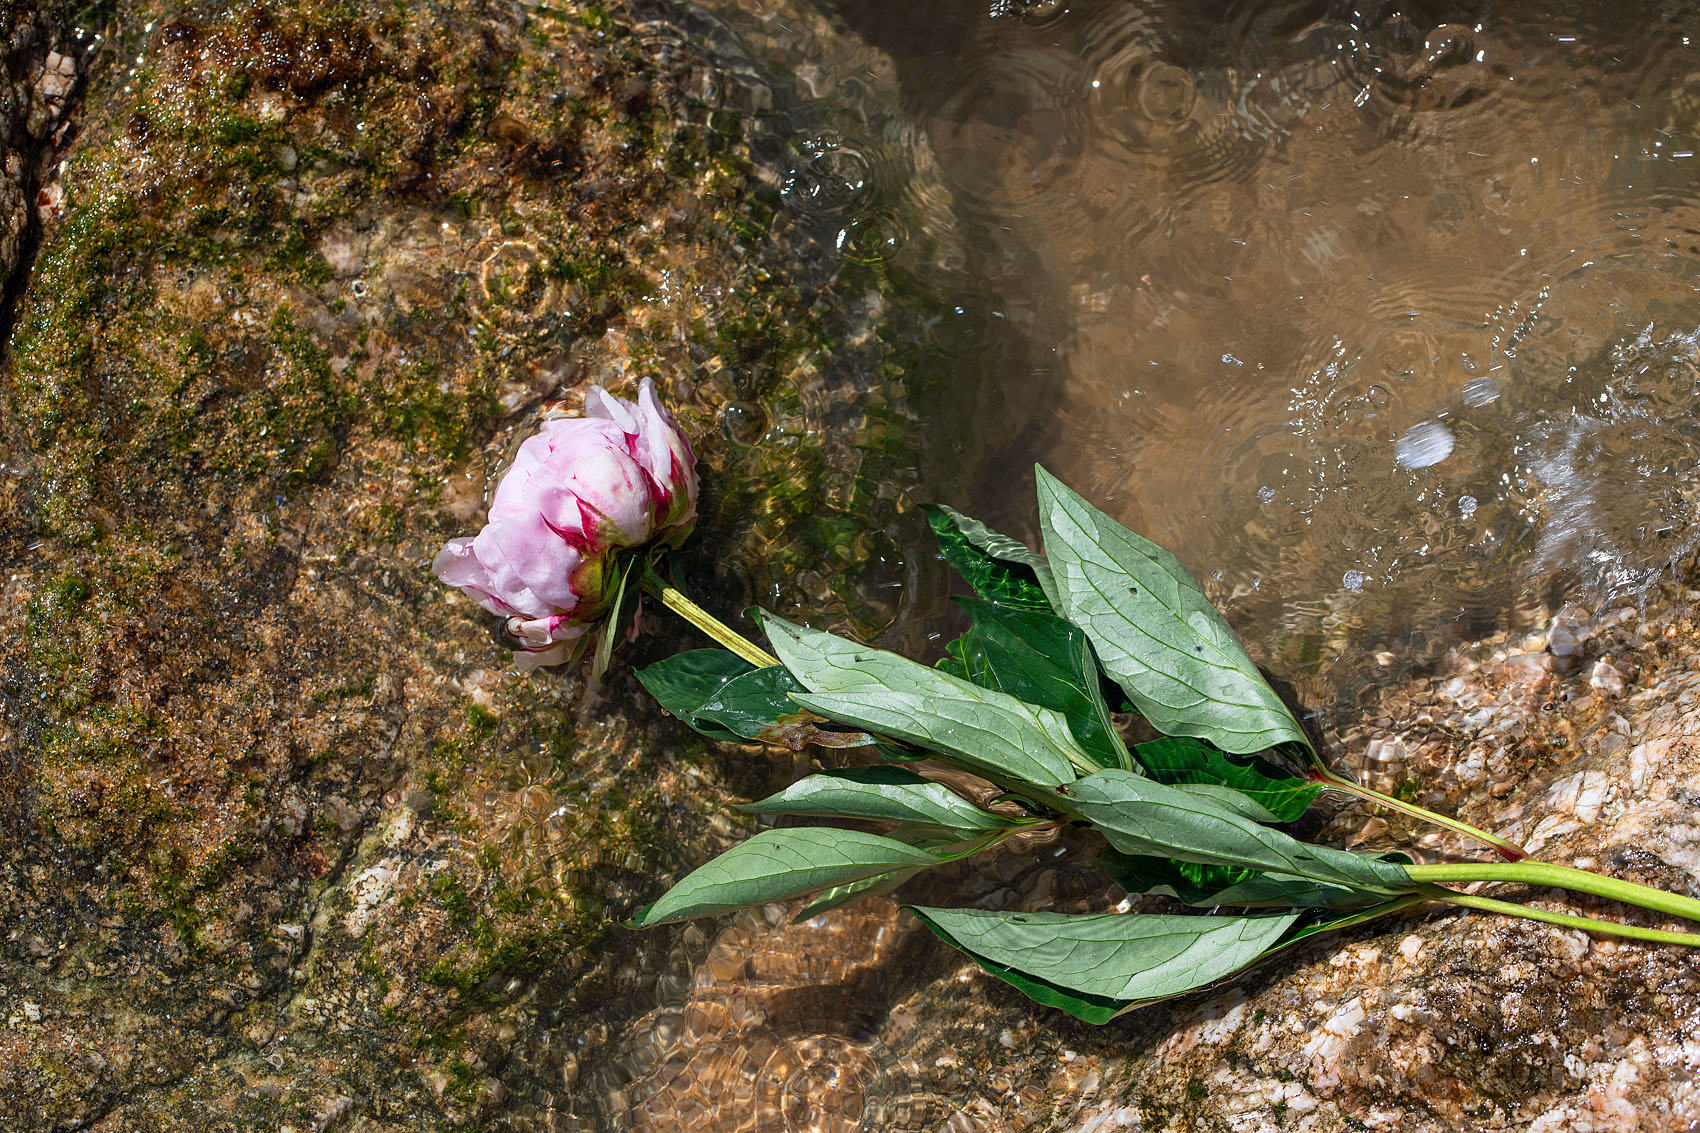 Les Sables d’Olonne, le 10 juin 2019. Les sablais sont venus déposer des fleurs sur le site du naufrage.